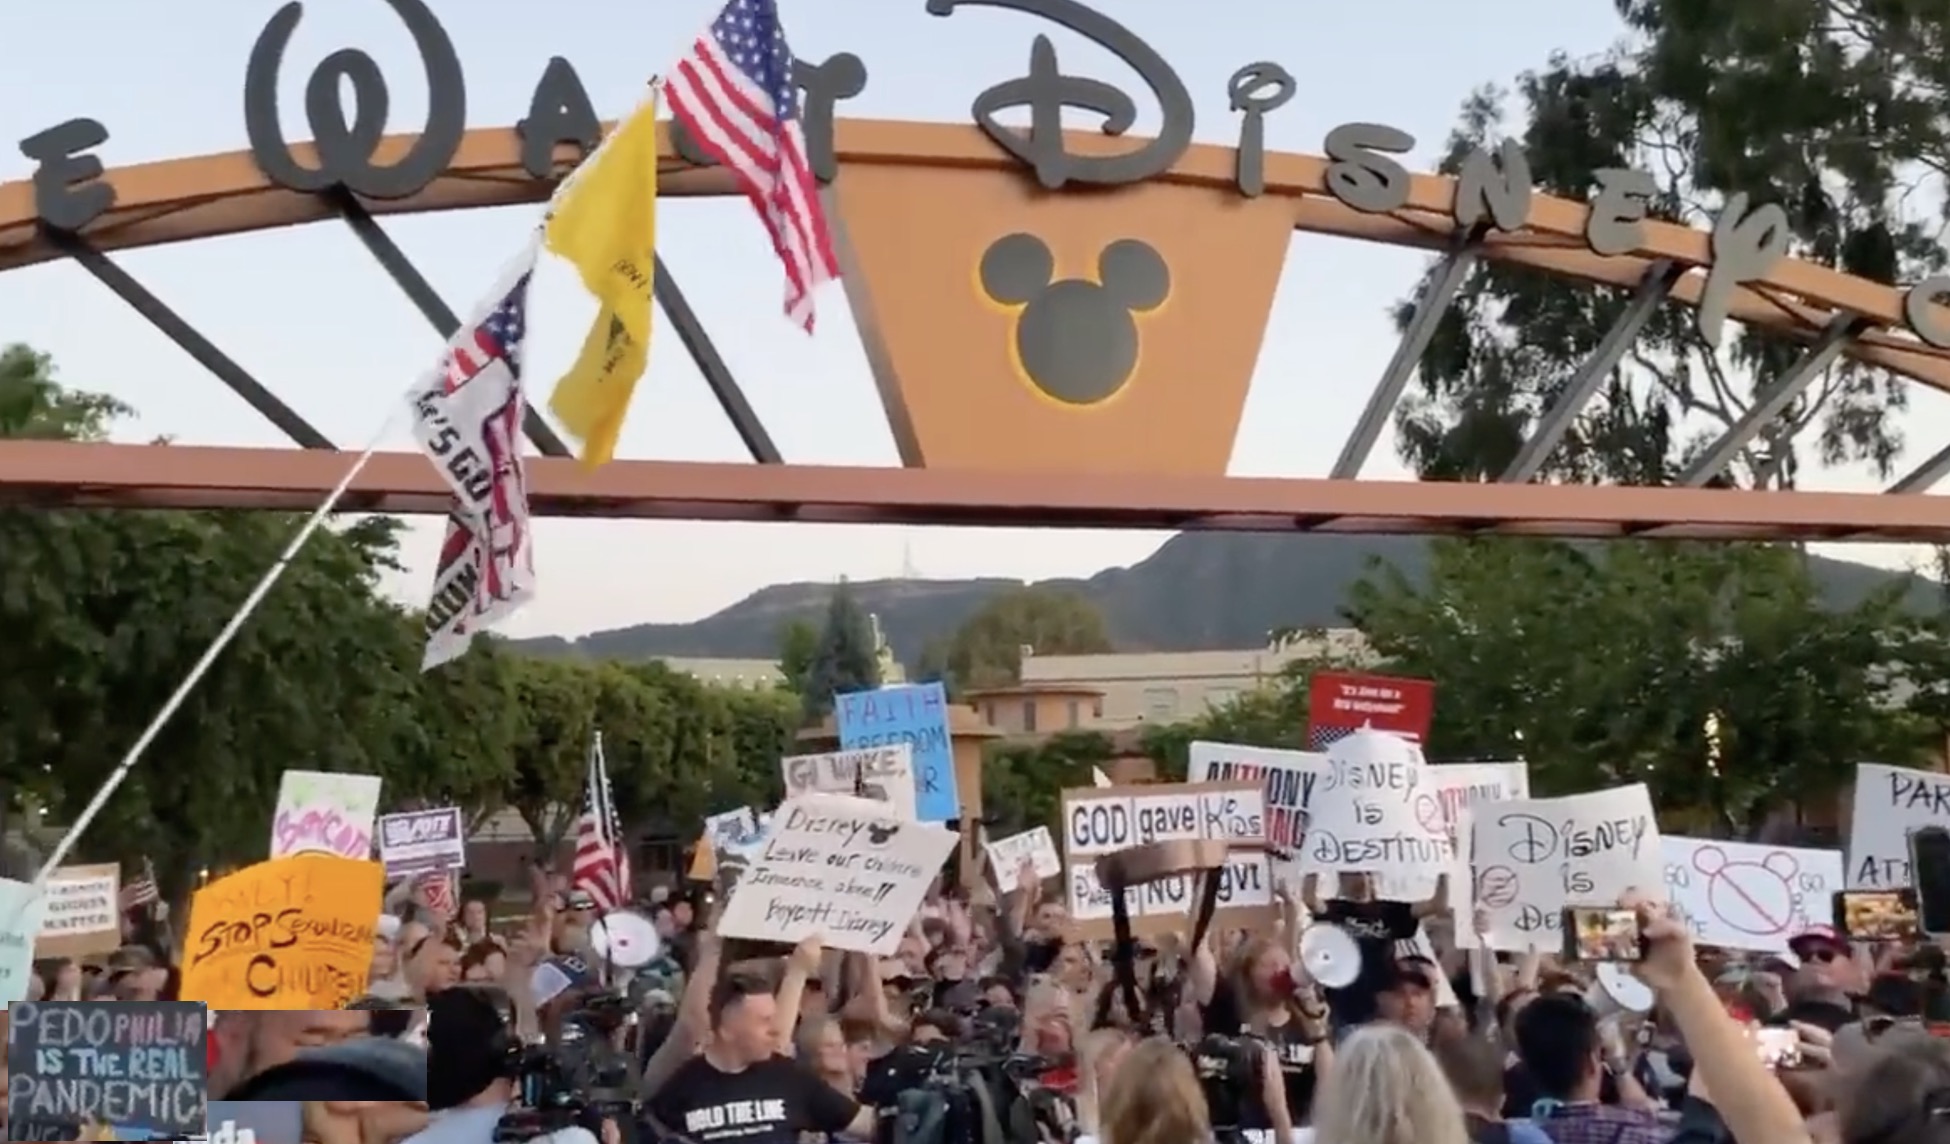 Hundreds Descend on Disney Headquarters to Fight Leftist 'Woke' Agenda